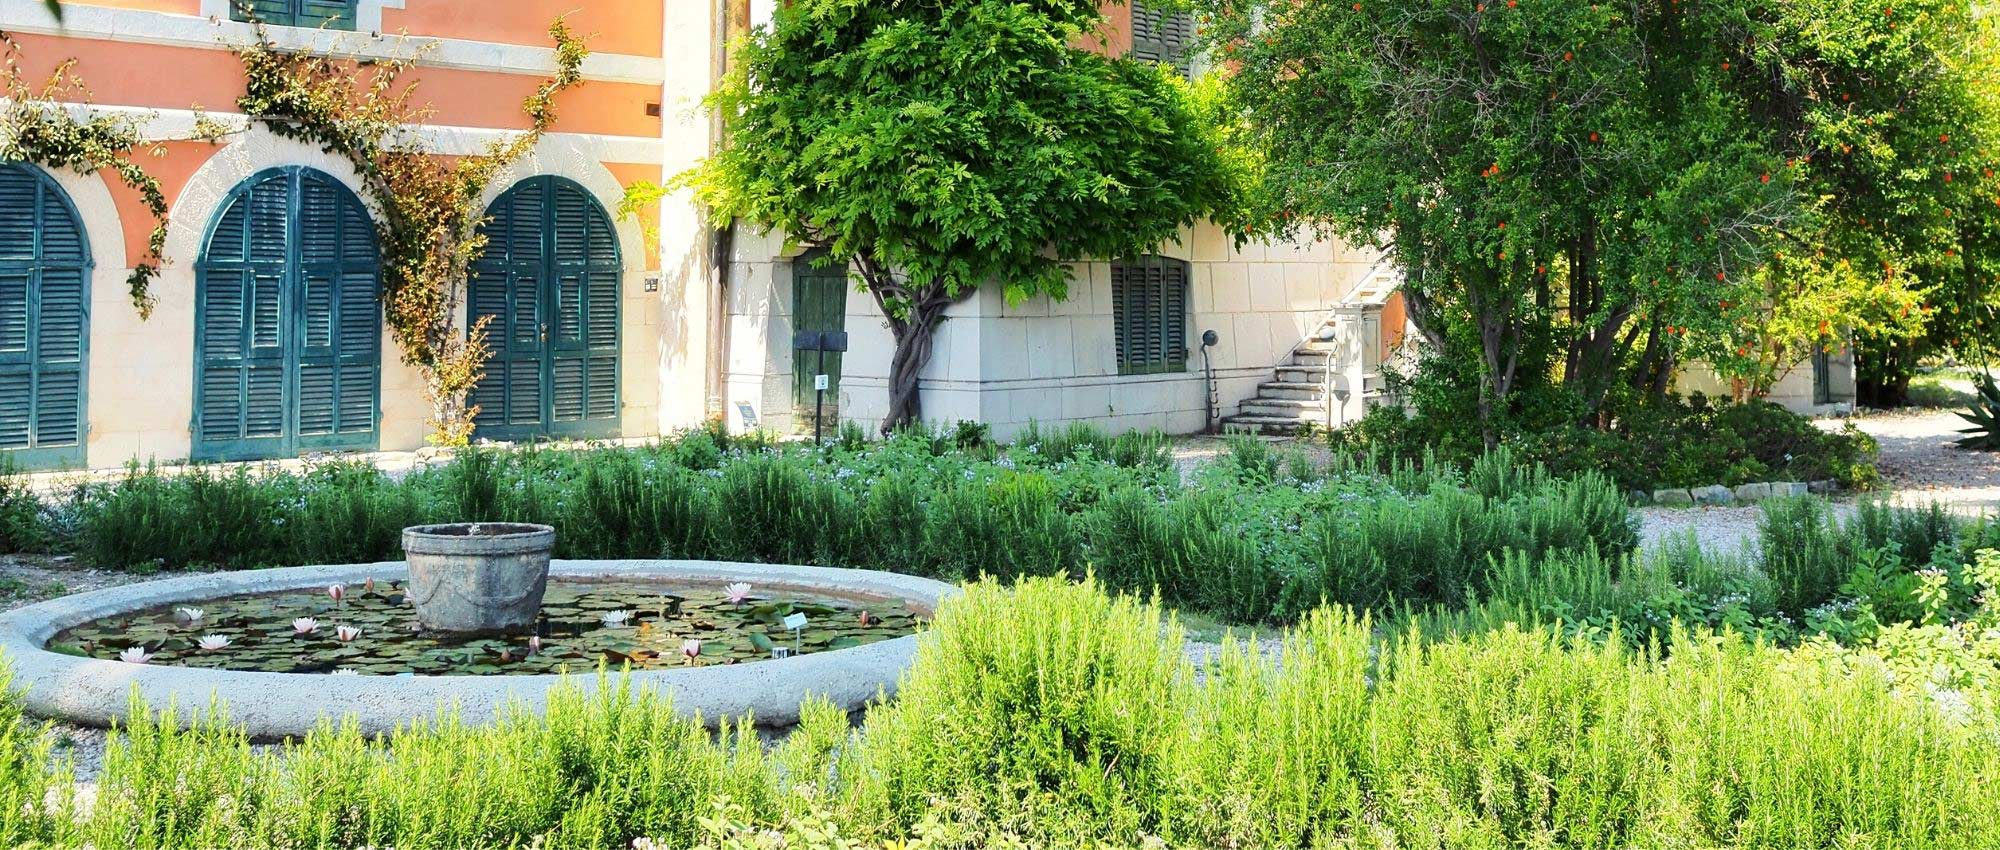 7 conseils pour aménager et réussir un jardin méditerranéen